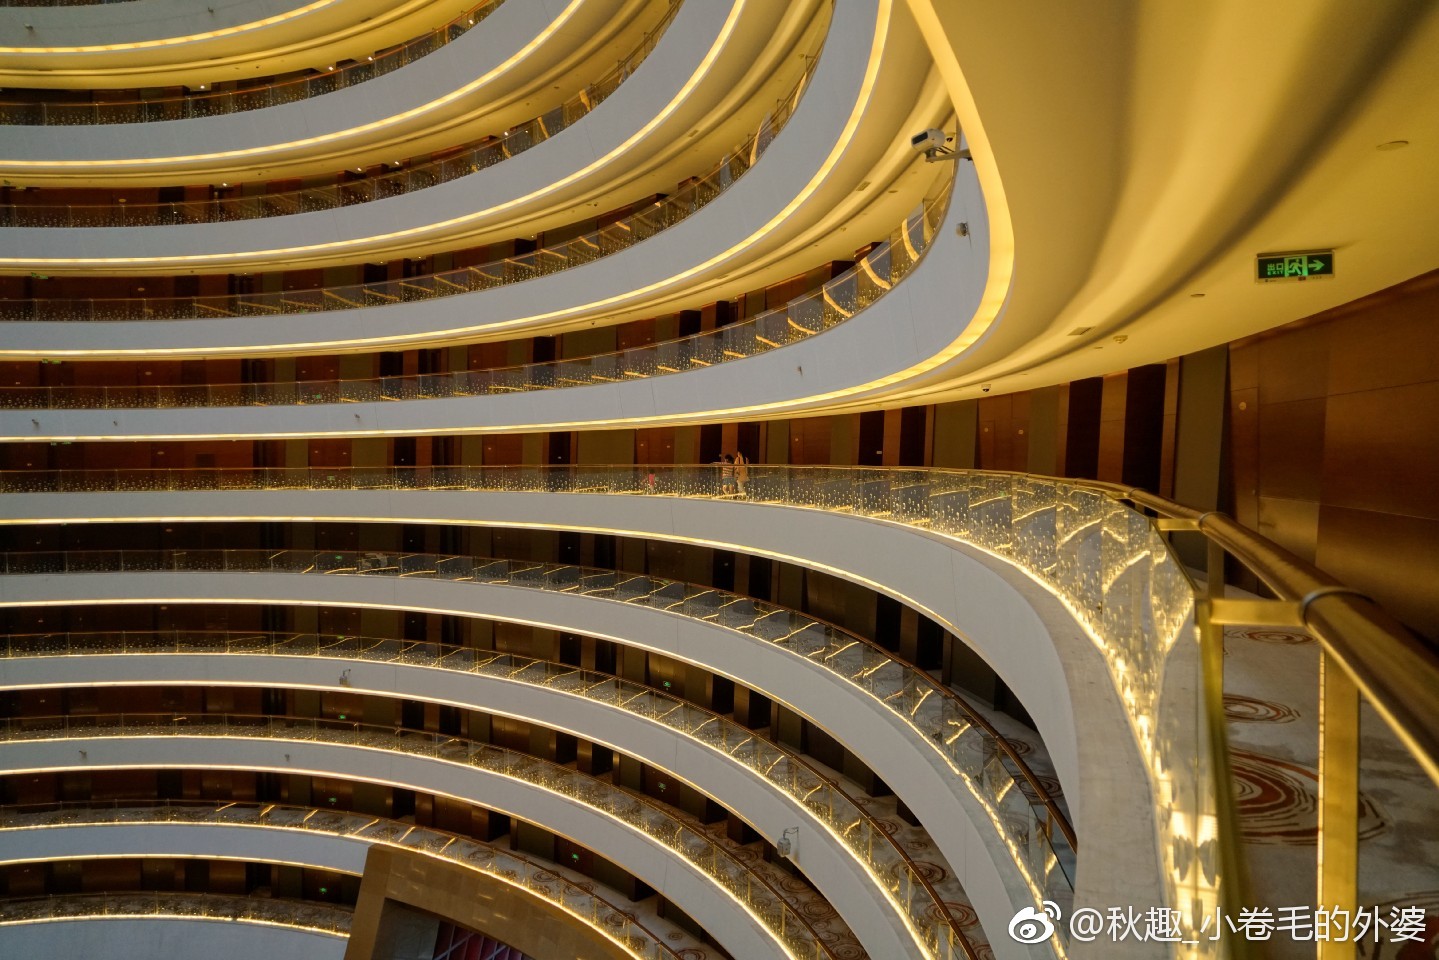 杭州的洲际酒店以其“大金球”的外观吸引了众多酒店控们的关注